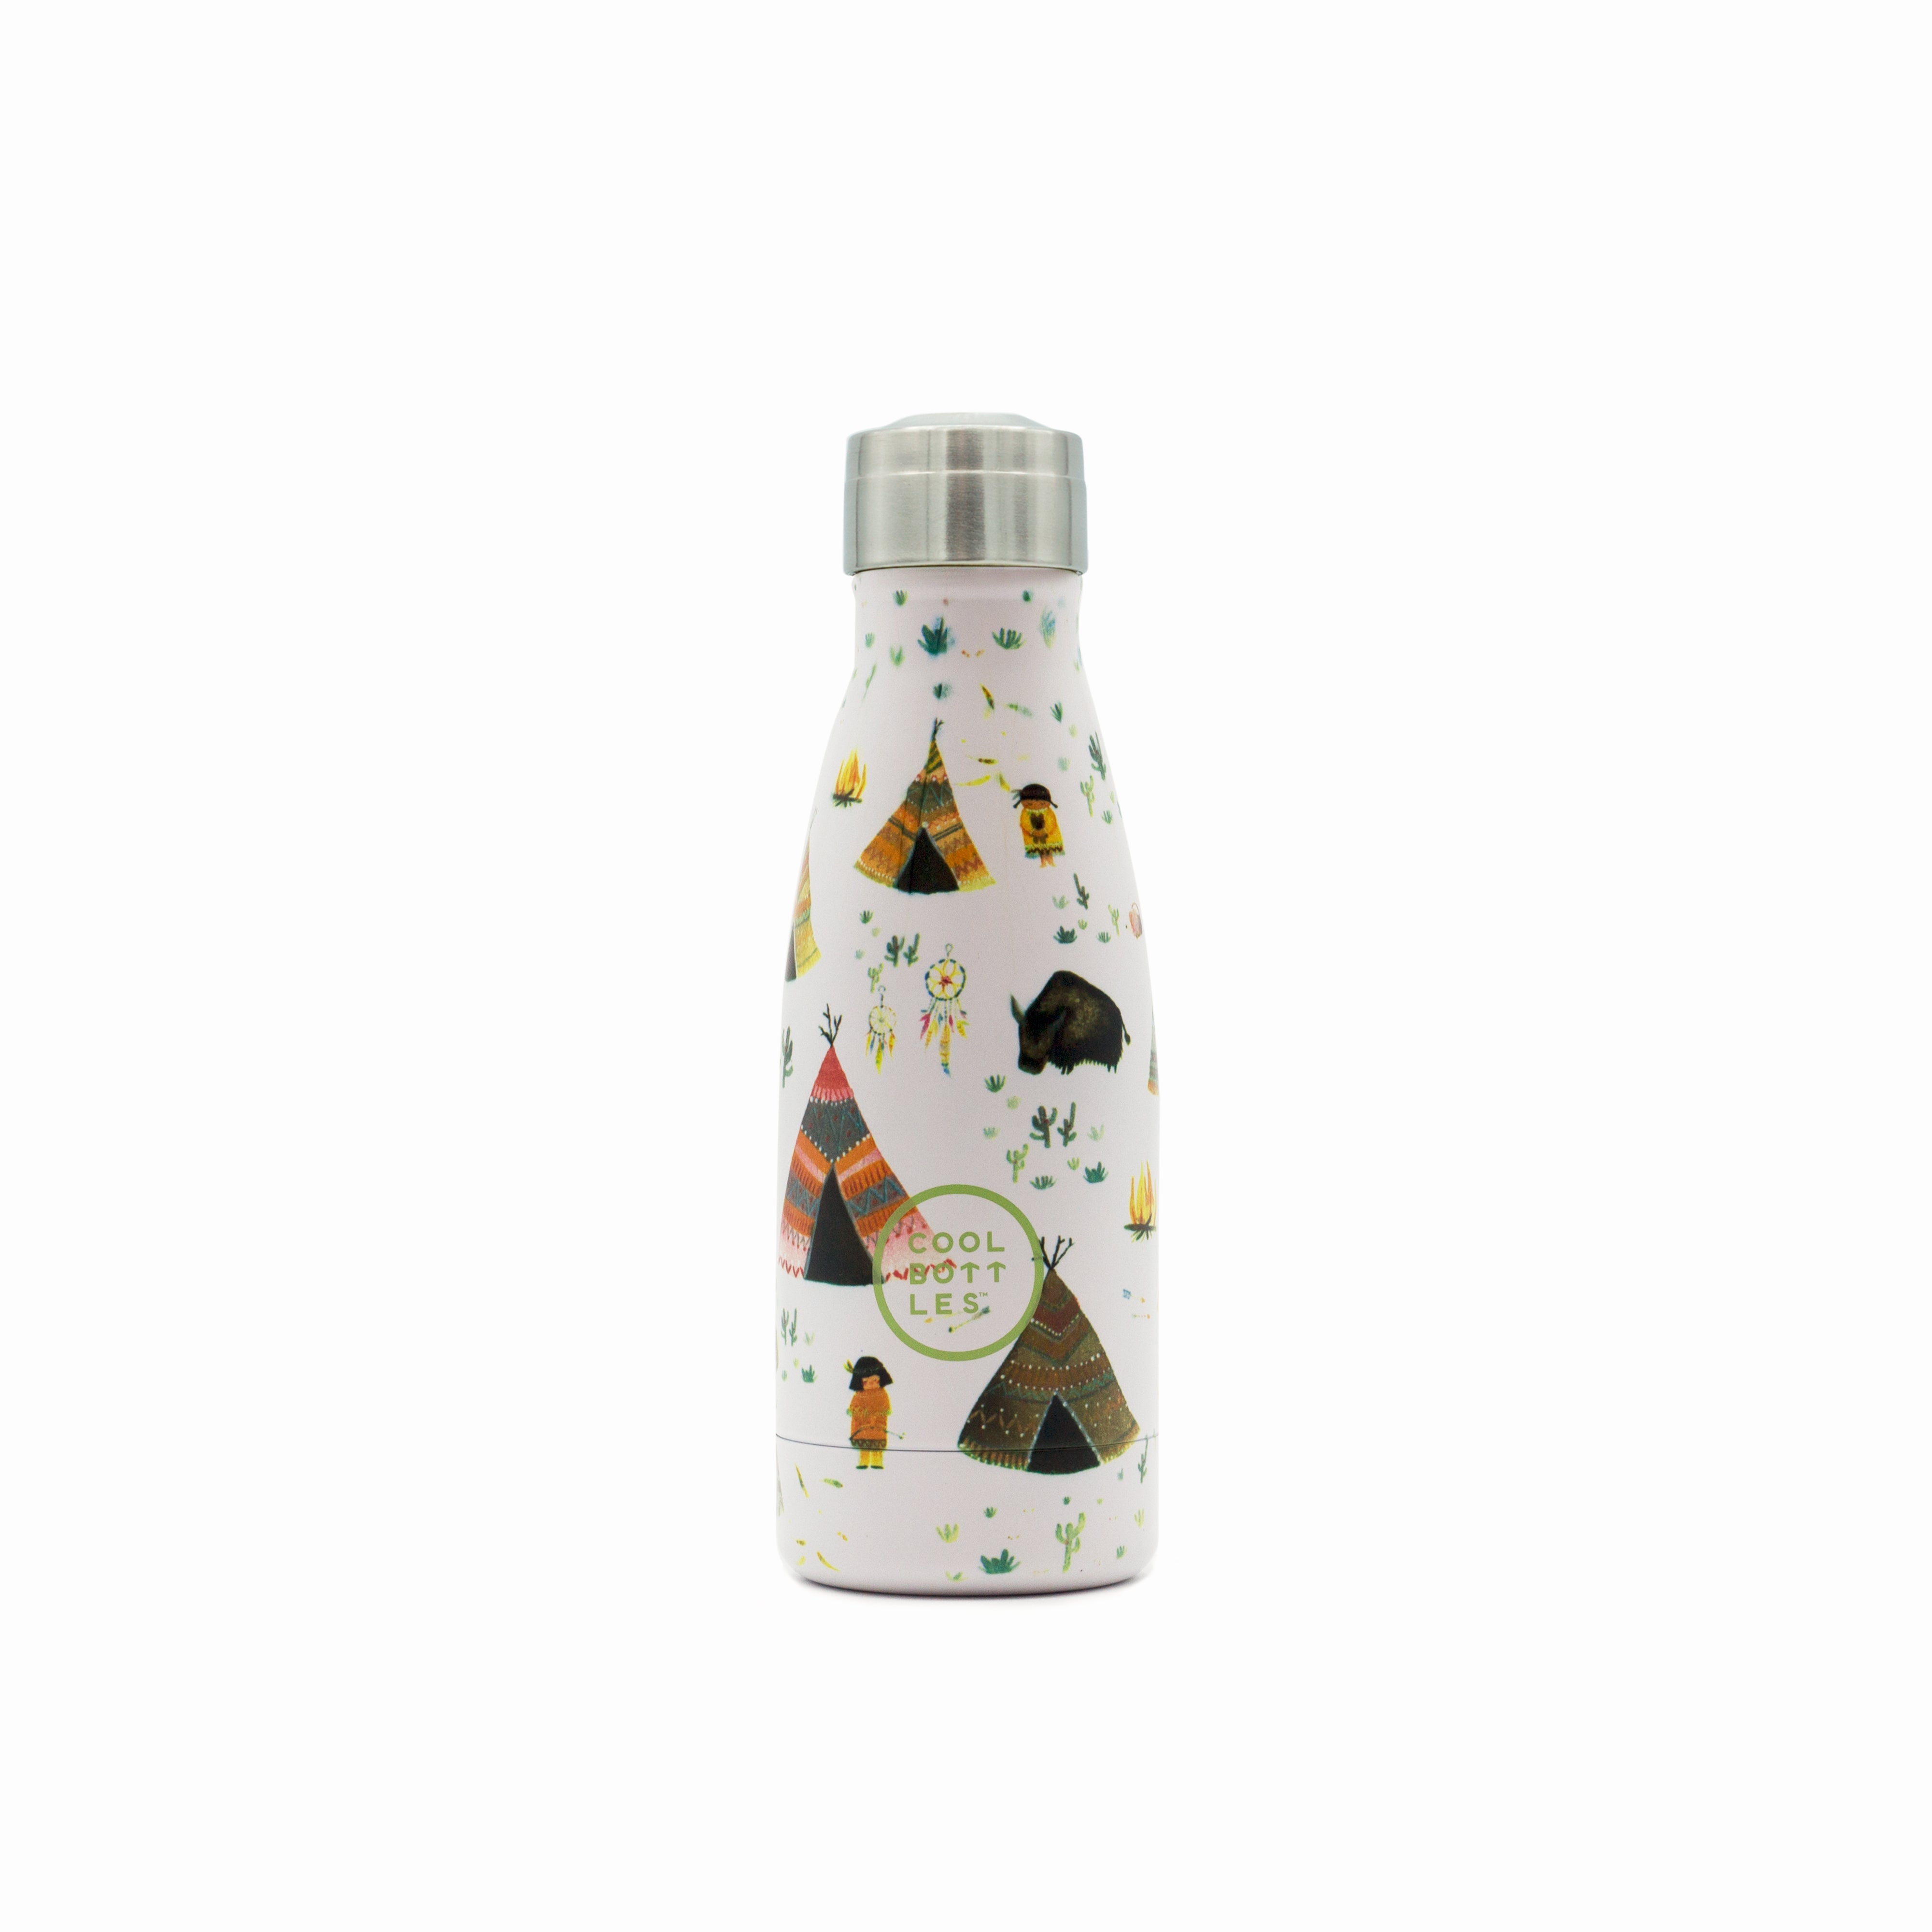 Garrafa Térmica Para Crianças De Aço Inoxidável Cool Bottles. Indian Tribe 260ml